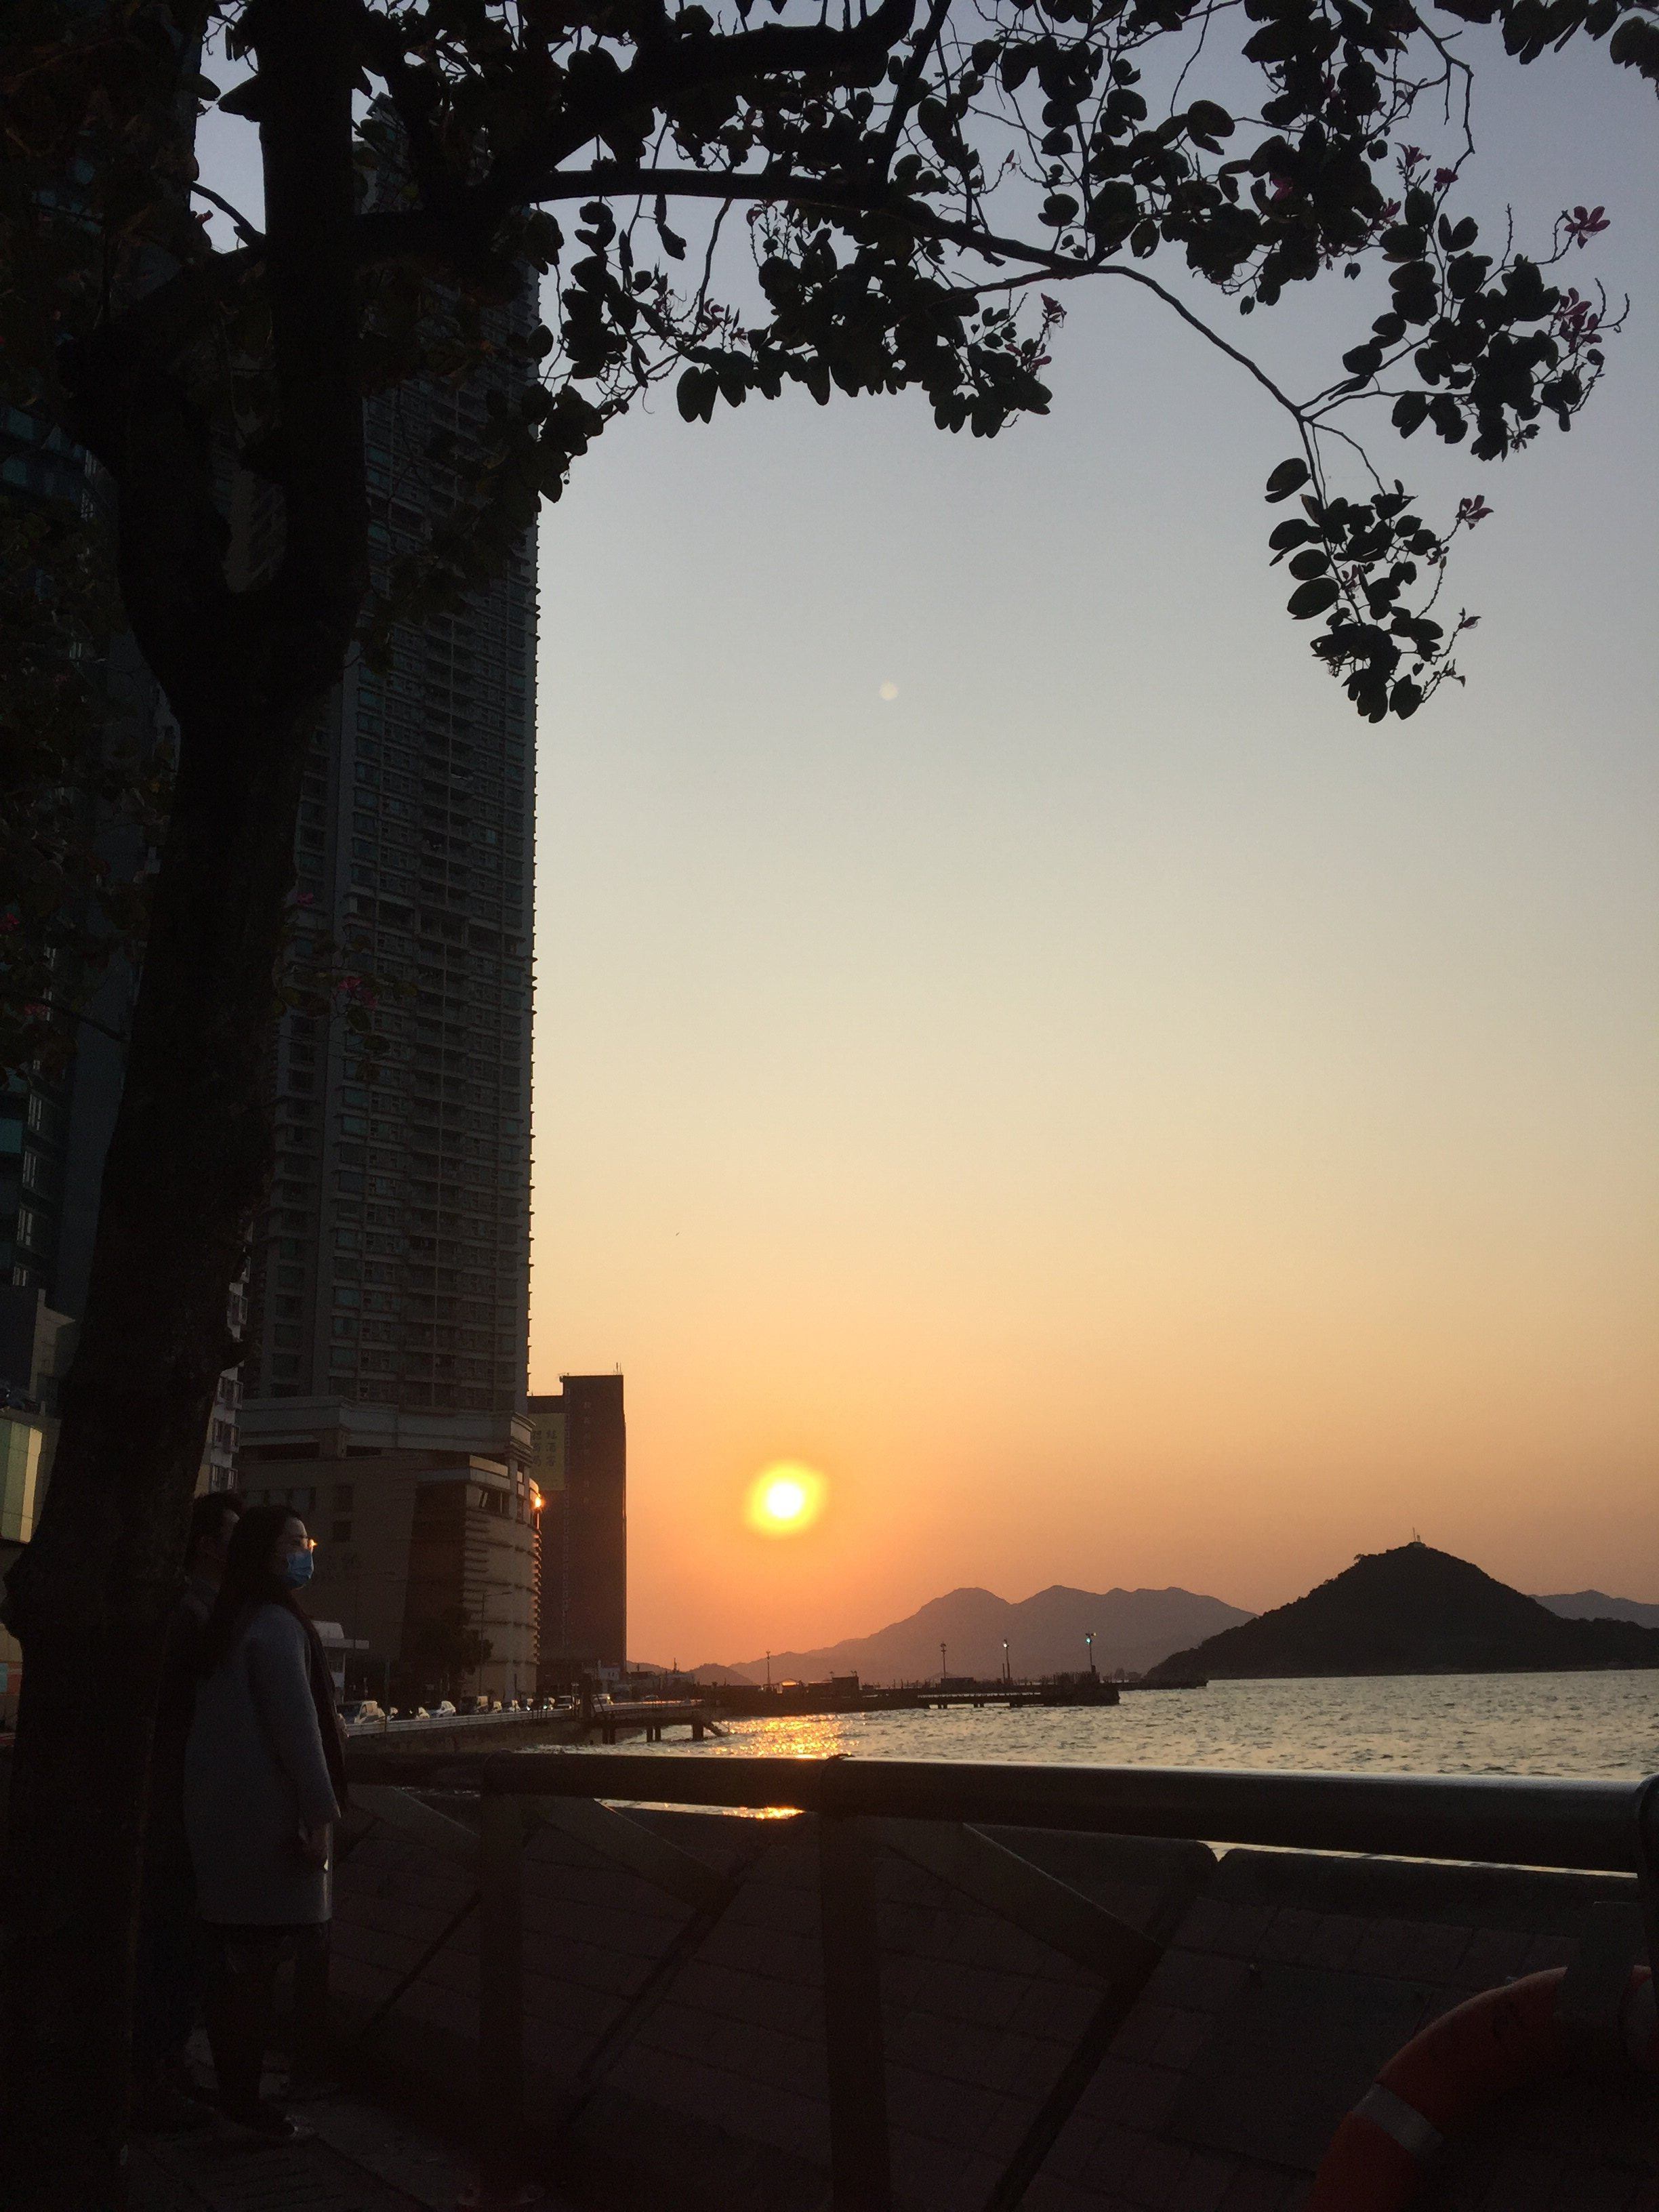 Last HK sunset